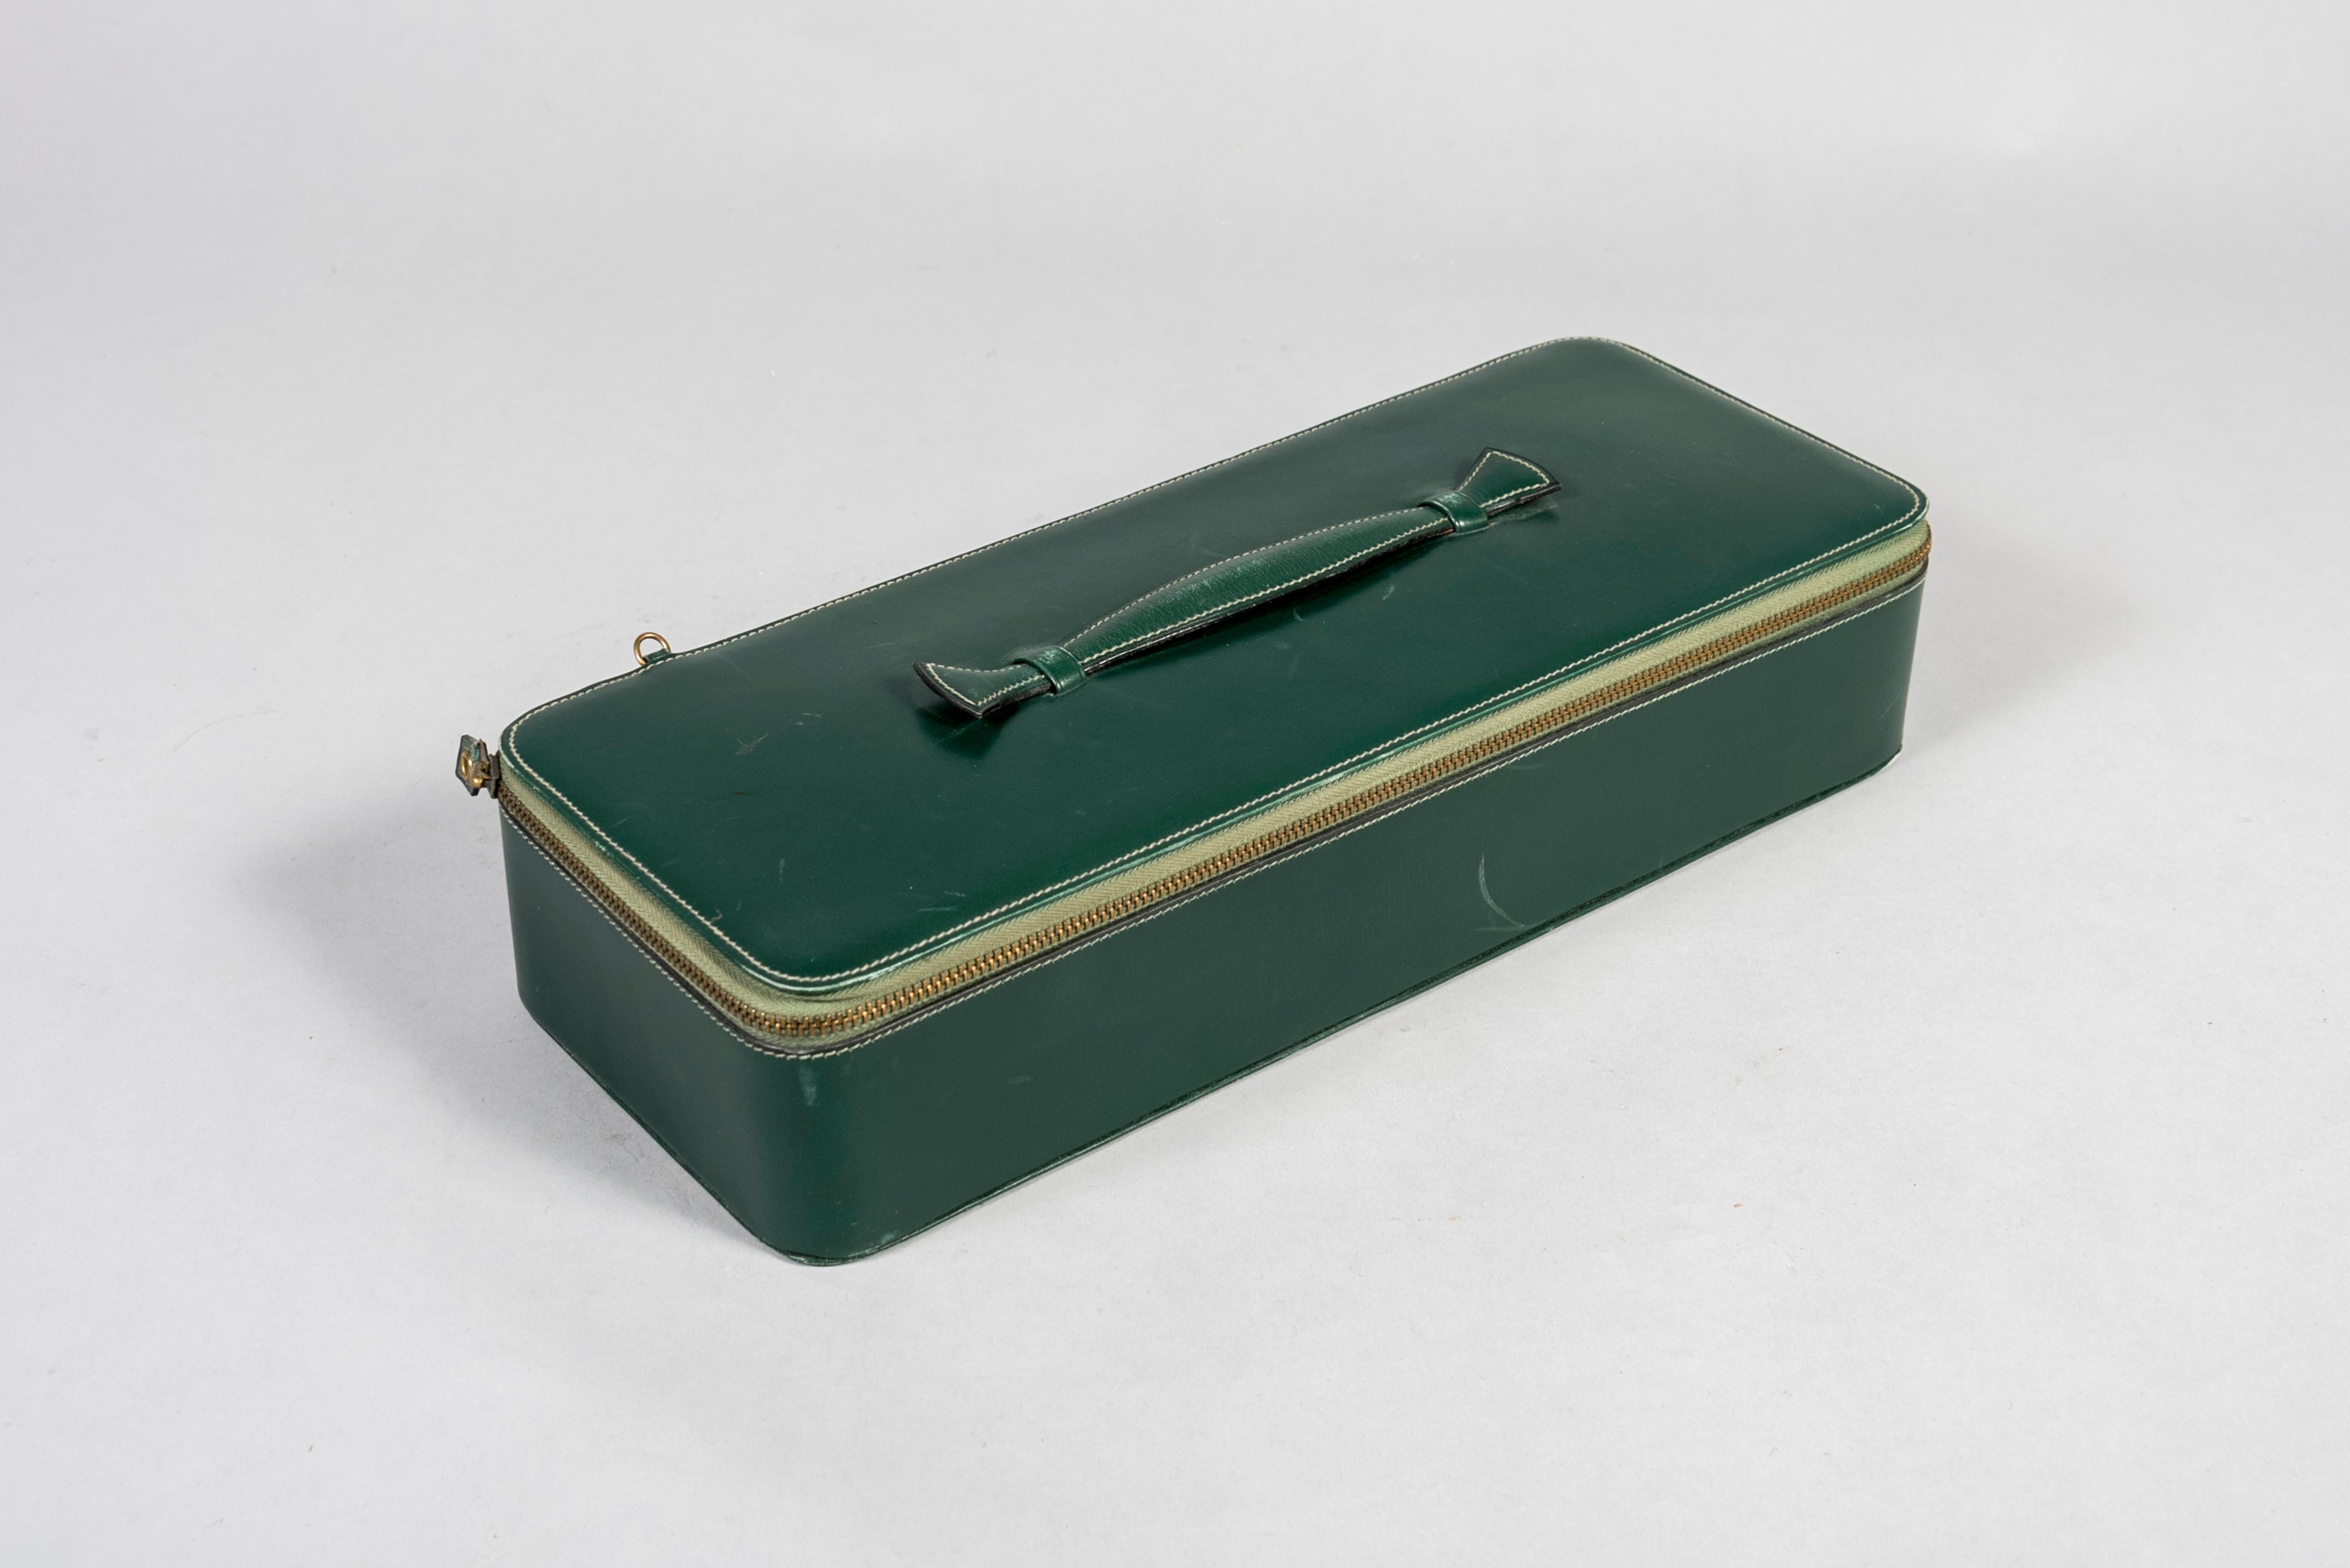 Rare boîte en cuir vert conçue par la Maison Hermès.
Vers les années 70.